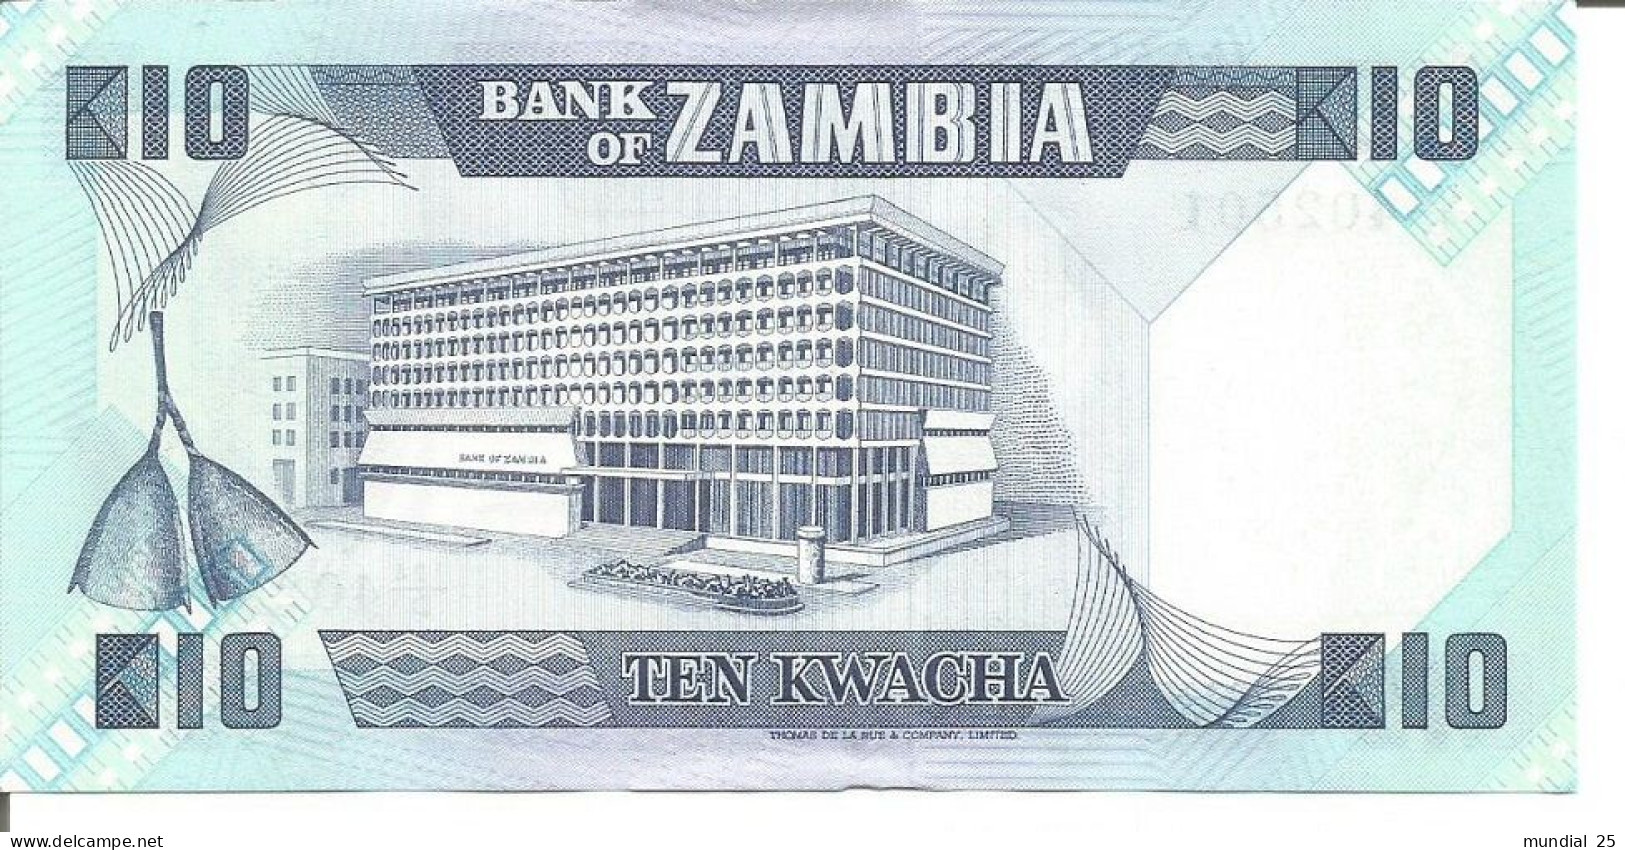 2 ZAMBIA NOTES 10 KWACHA N/D (1986) - Zambia